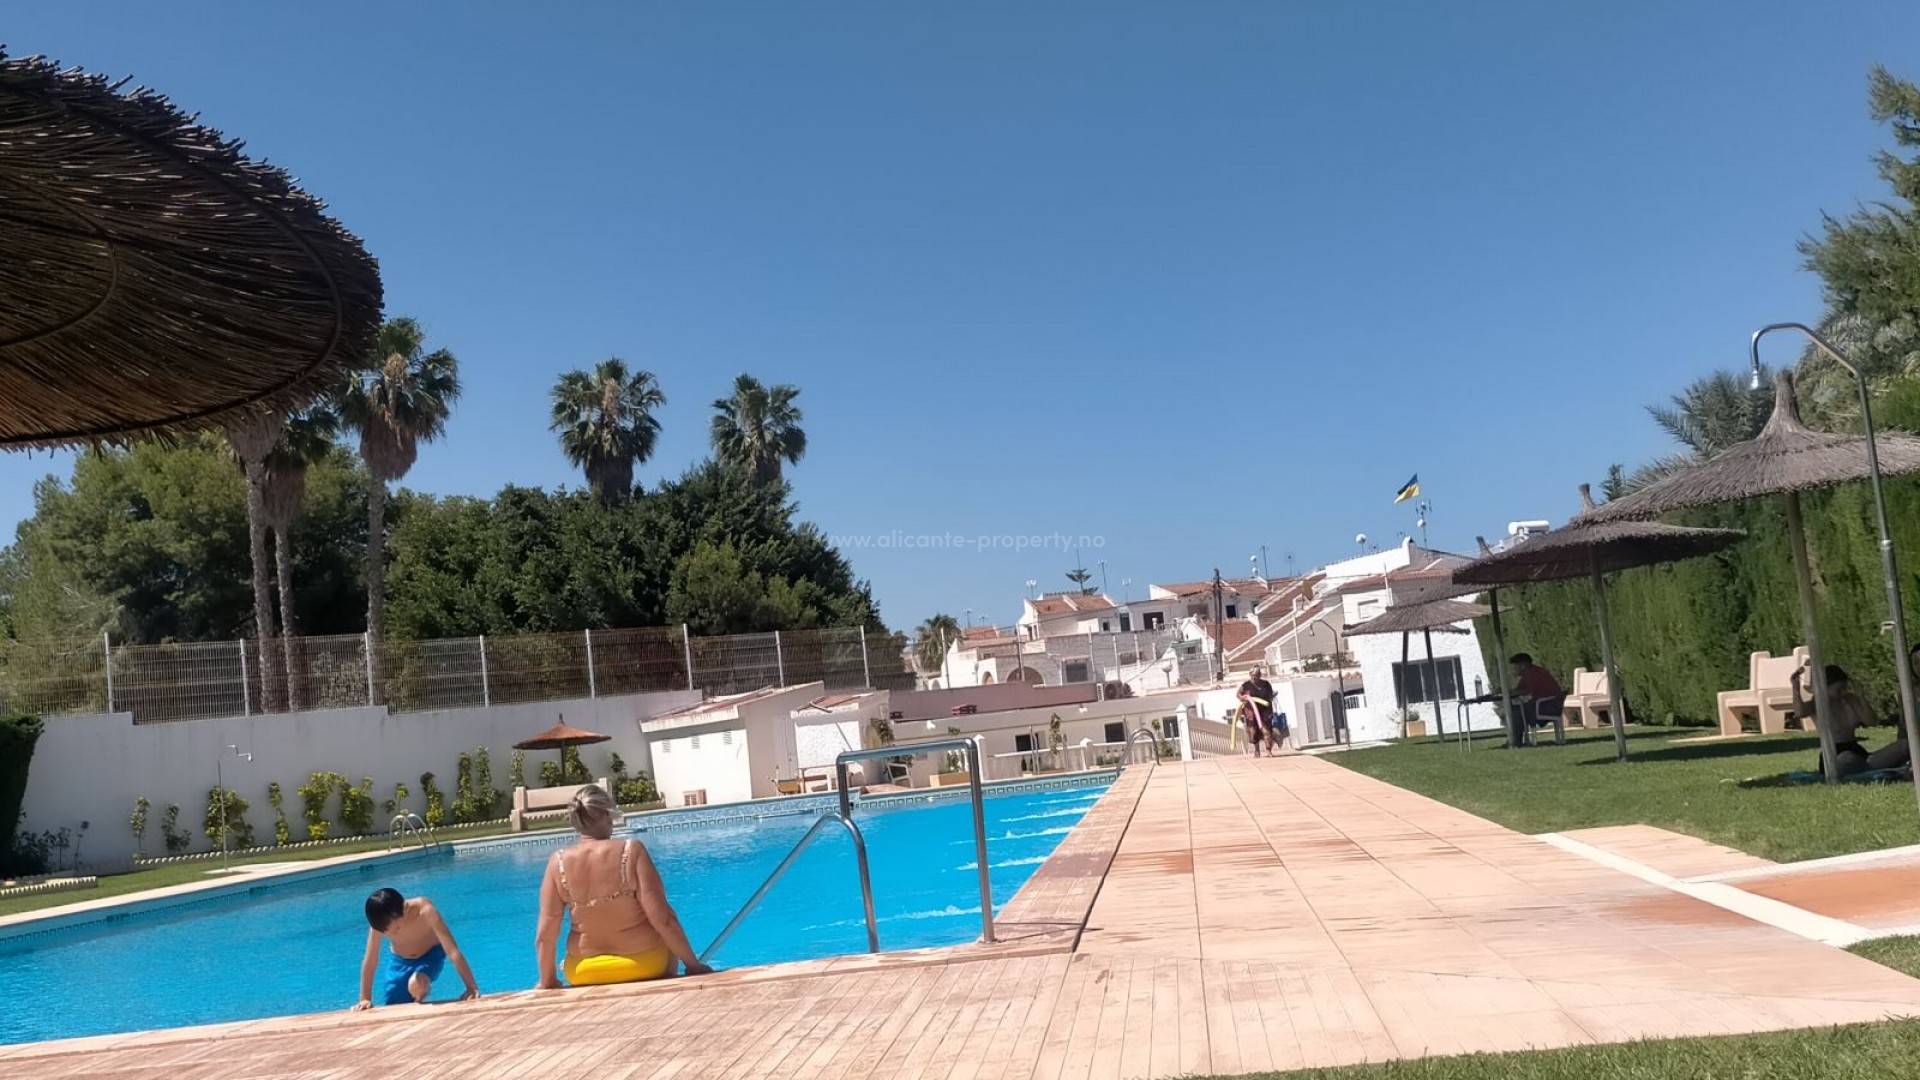 Investerings-bolig i Spania, equity release bungalow/tomannsbolig i Torrevieja, Alicante,3 soverom, 2 bad, felles basseng, 2 solarium og åpen terrasse